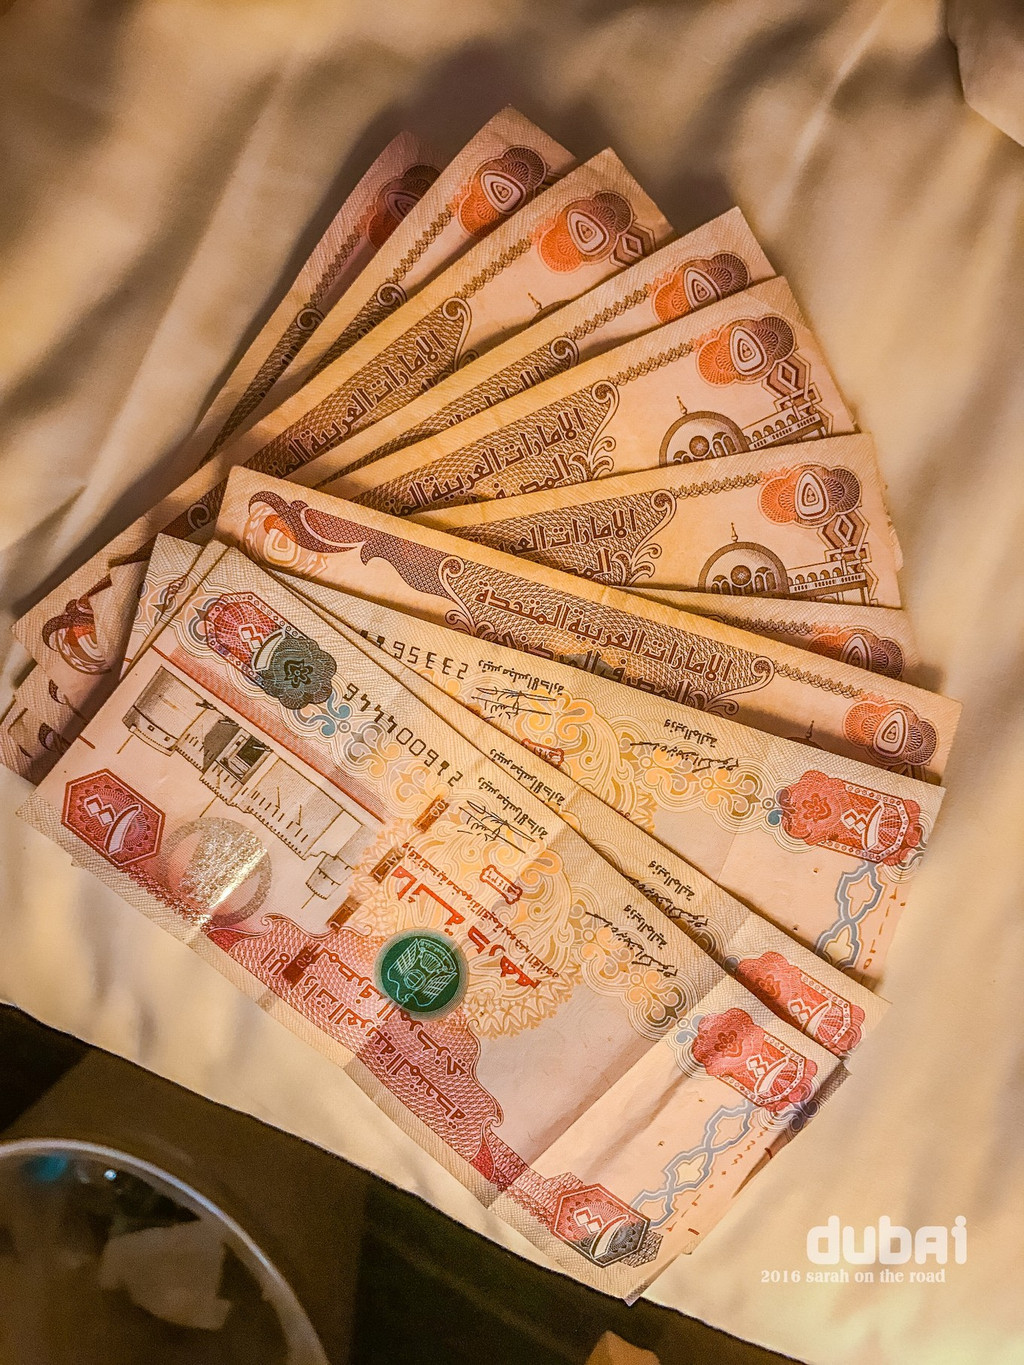 阿联酋货币迪拉姆和迪拜阿布扎比 库存图片. 图片 包括有 酋长管辖区, 中间, 背包, 阿拉伯人, 海湾 - 195588981